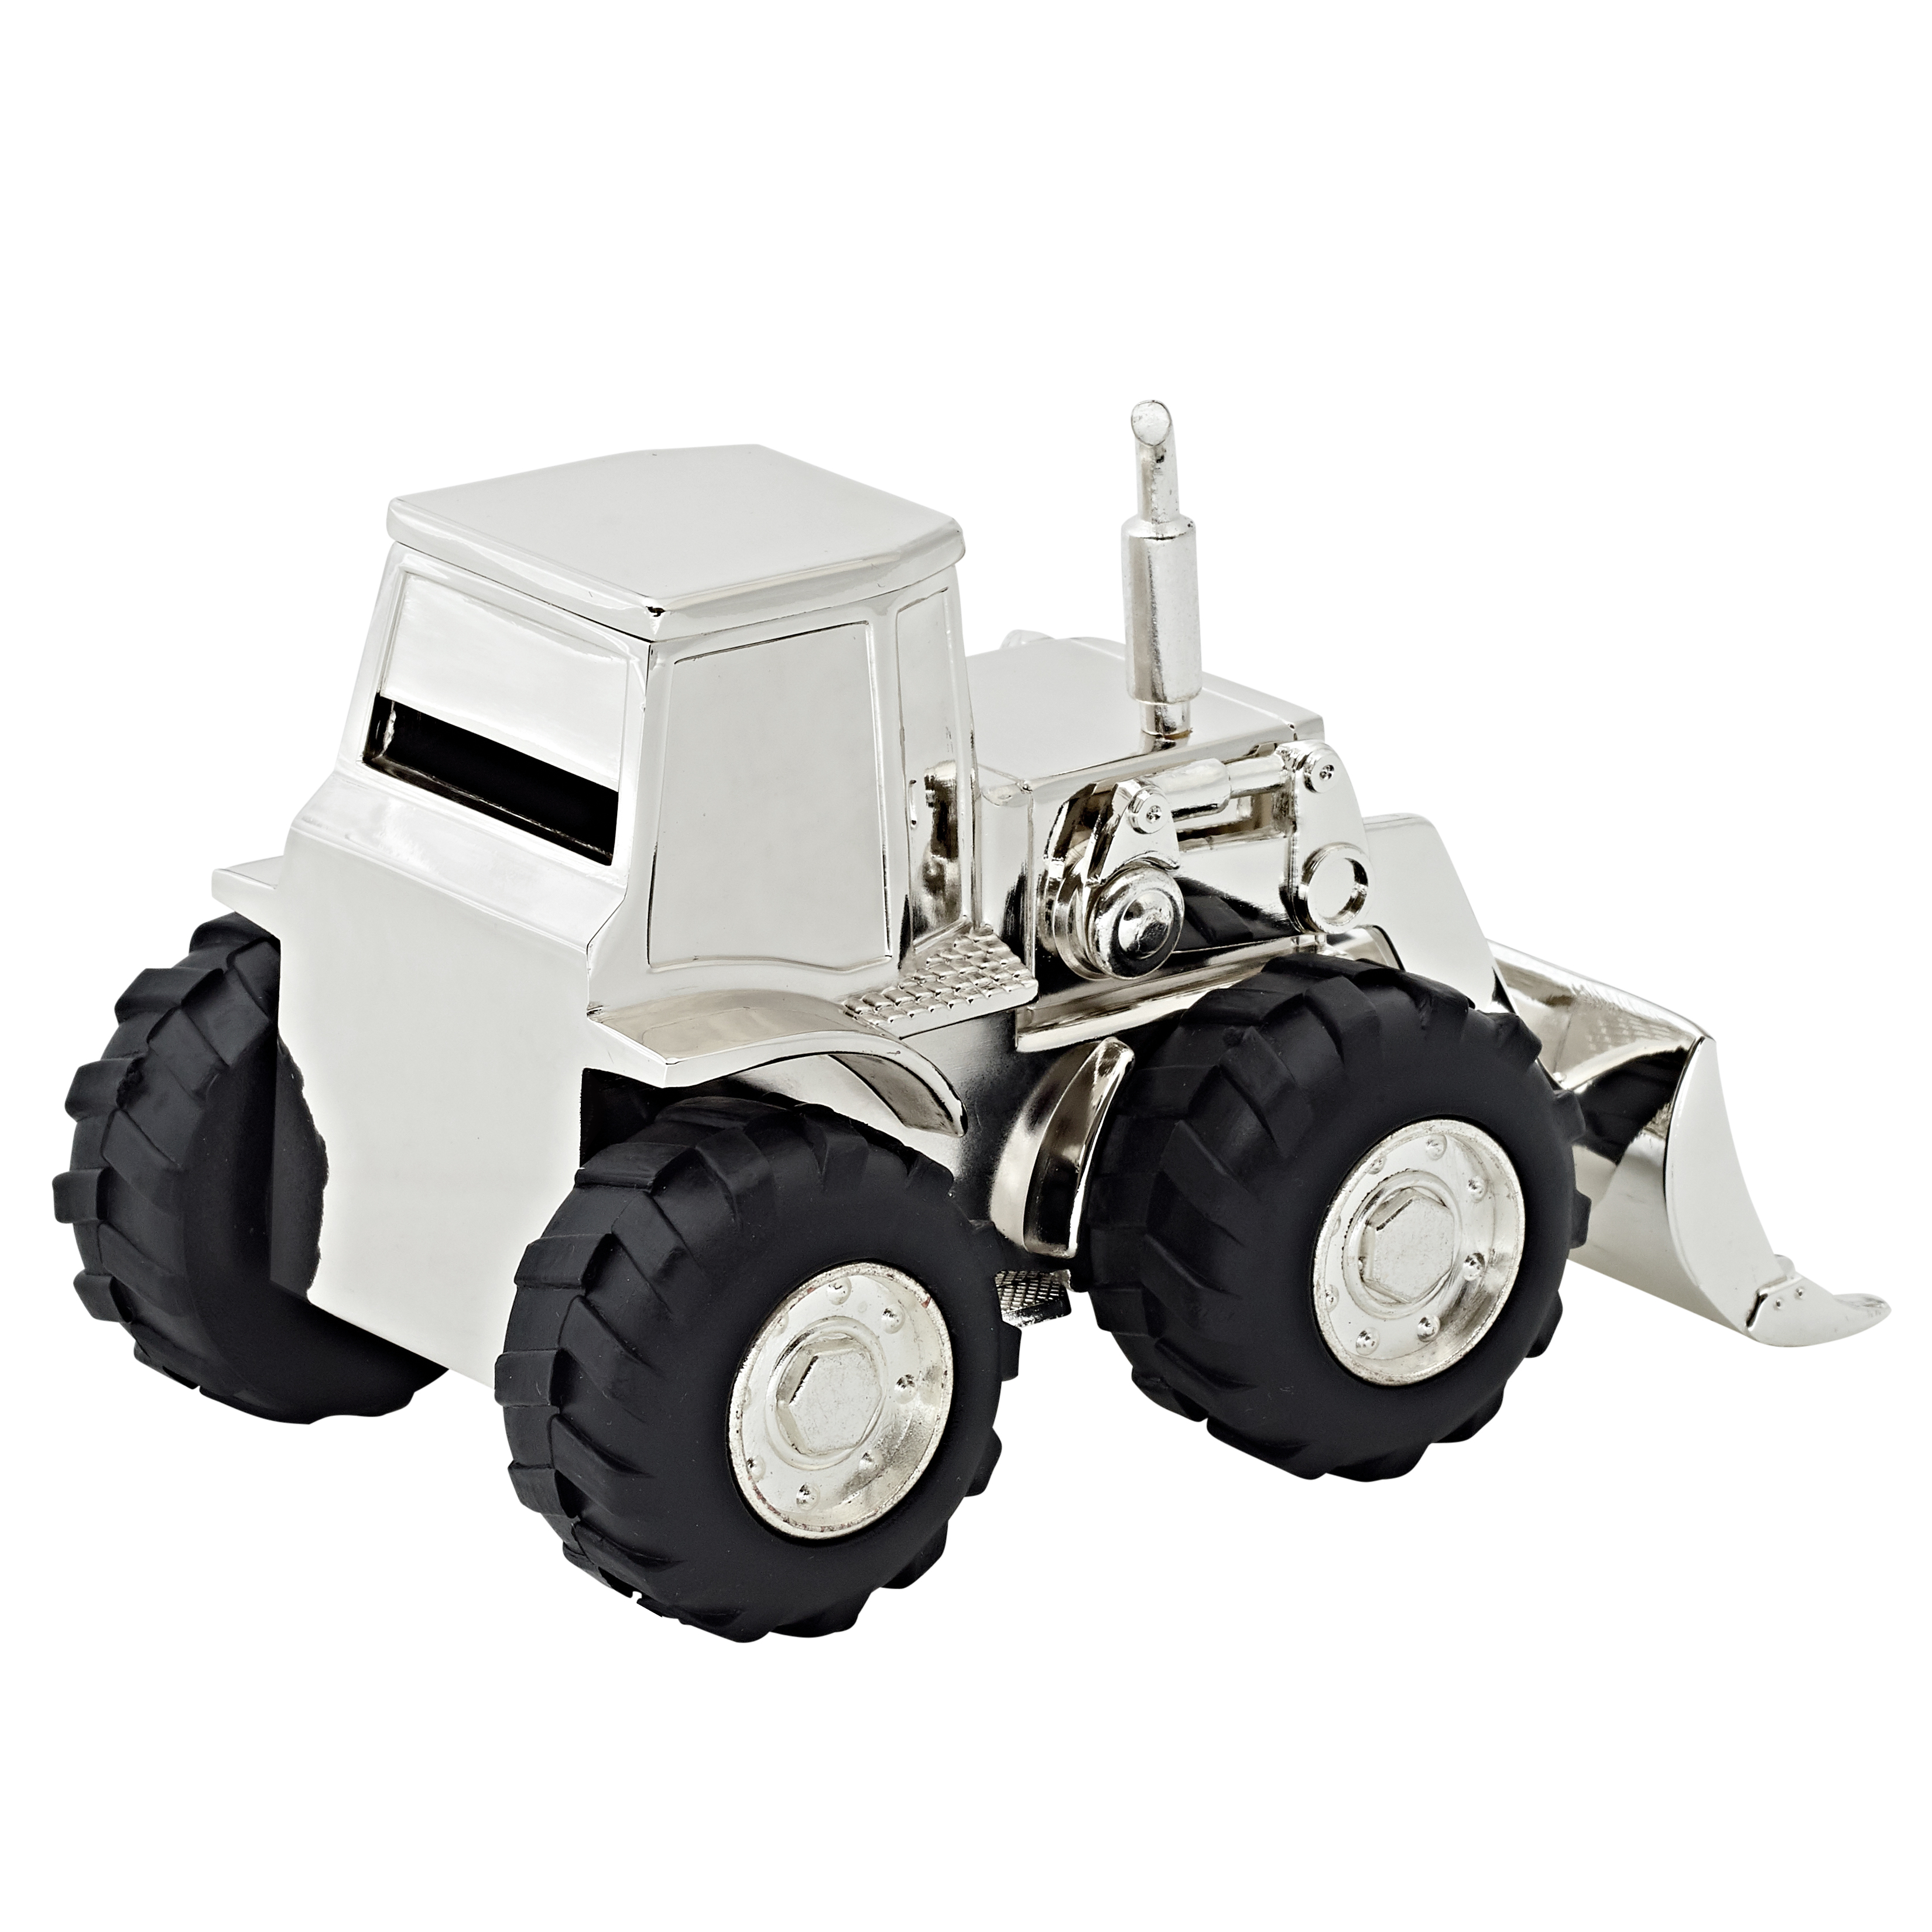 Spardose Sparbüchse Traktor Trecker, edel versilbert, anlaufgeschützt, Höhe 9 cm